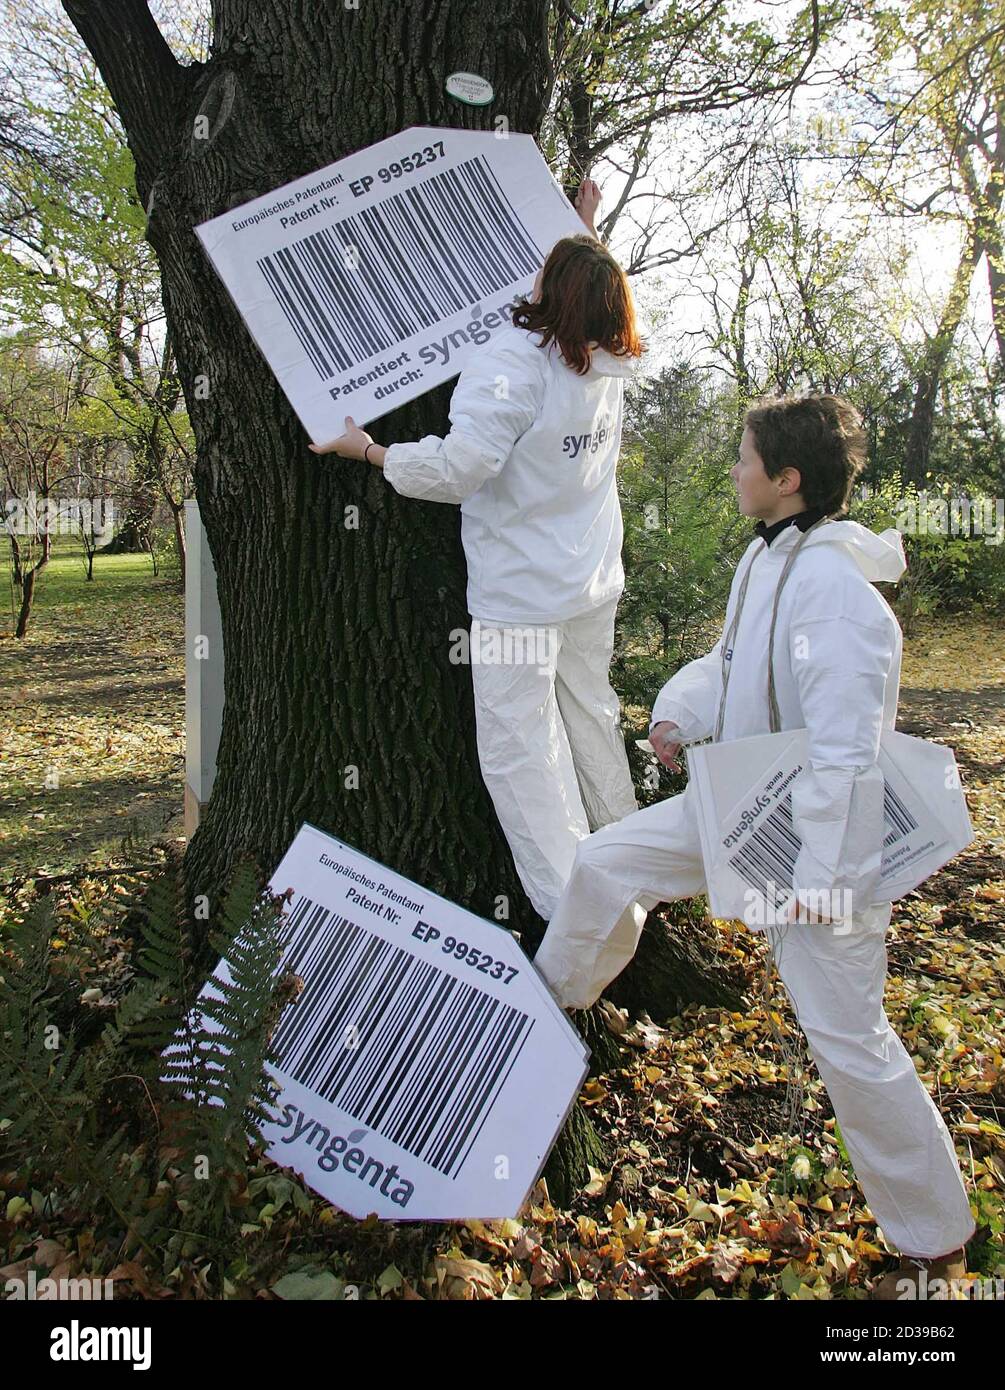 Die 'Plattform gegen Biopatente' protestierte heute, am 23. November 2004, in Wien gegen die Umsetzung der EU-Biopatentrichtlinie in oesterreichisches Recht. Entlang der Wiener Ringstrasse und im Rathauspark wurden symbolisch Baeume und Straeucher mit Strichcodes als von Biotech-Konzernen patentiert markiert. REUTERS/Heinz-Peter Bader REUTERS  HPB/ Stock Photo